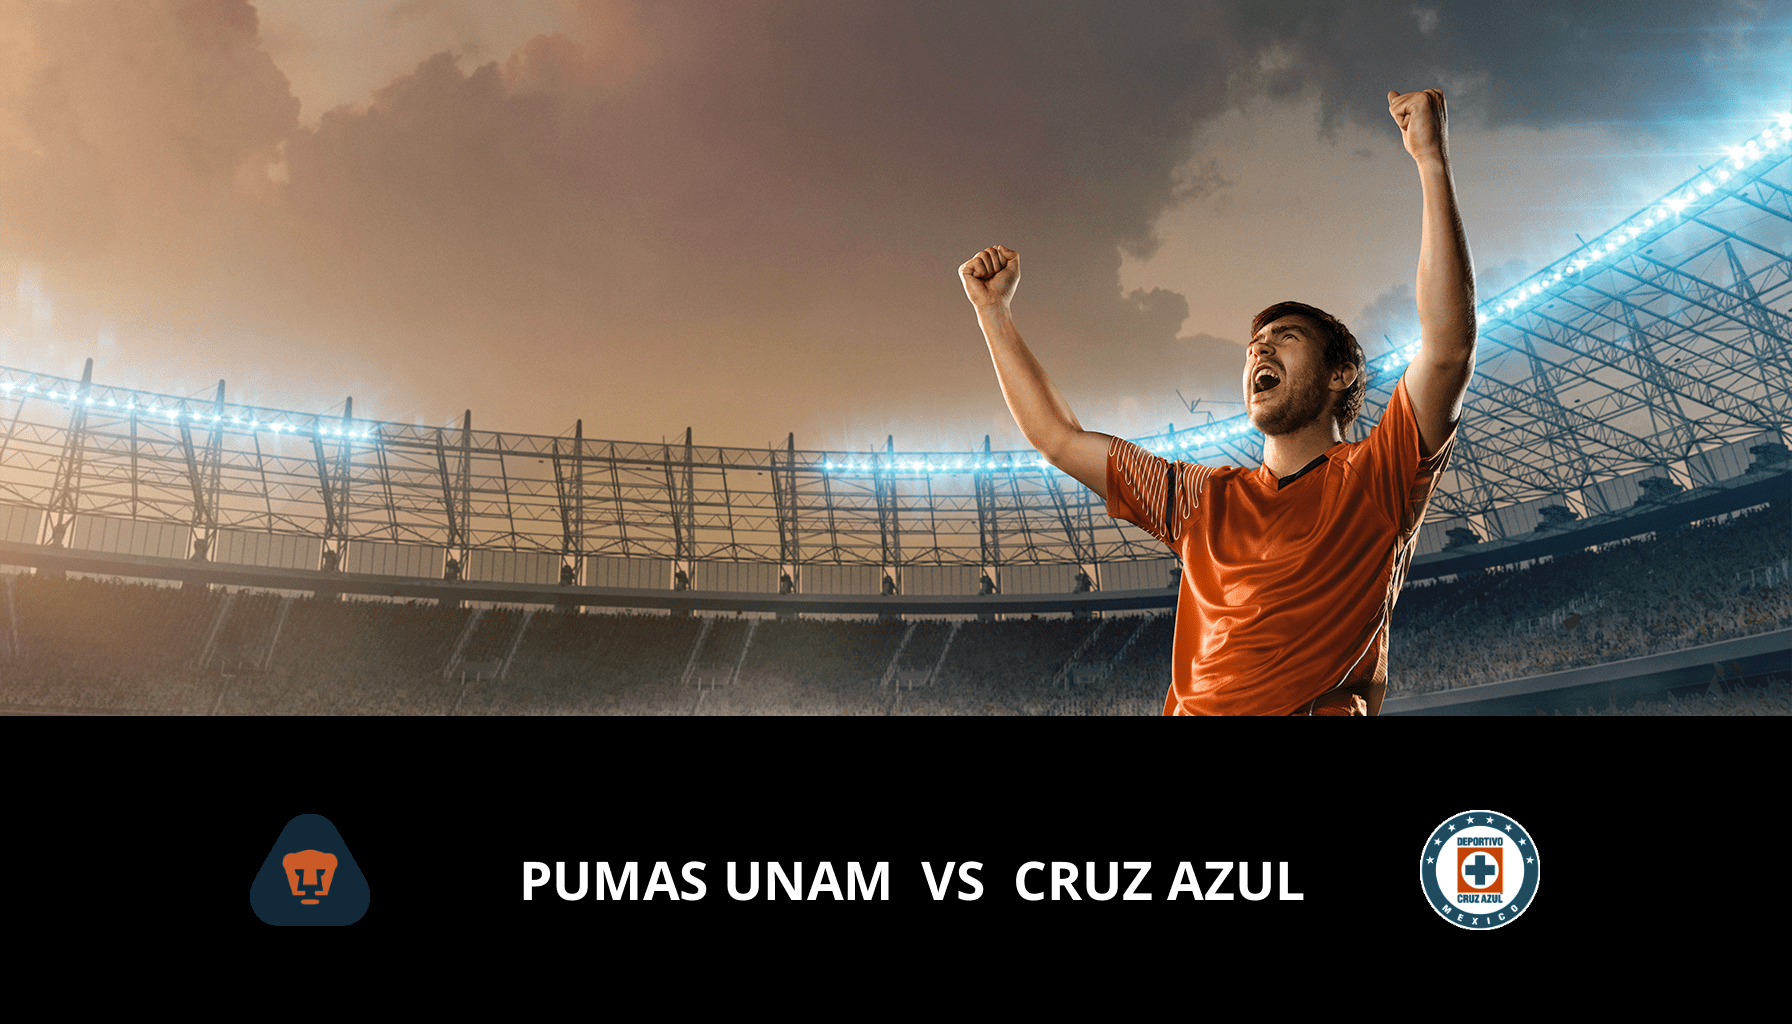 Previsione per UNAM – Pumas VS Cruz Azul il 08/05/2024 Analysis of the match